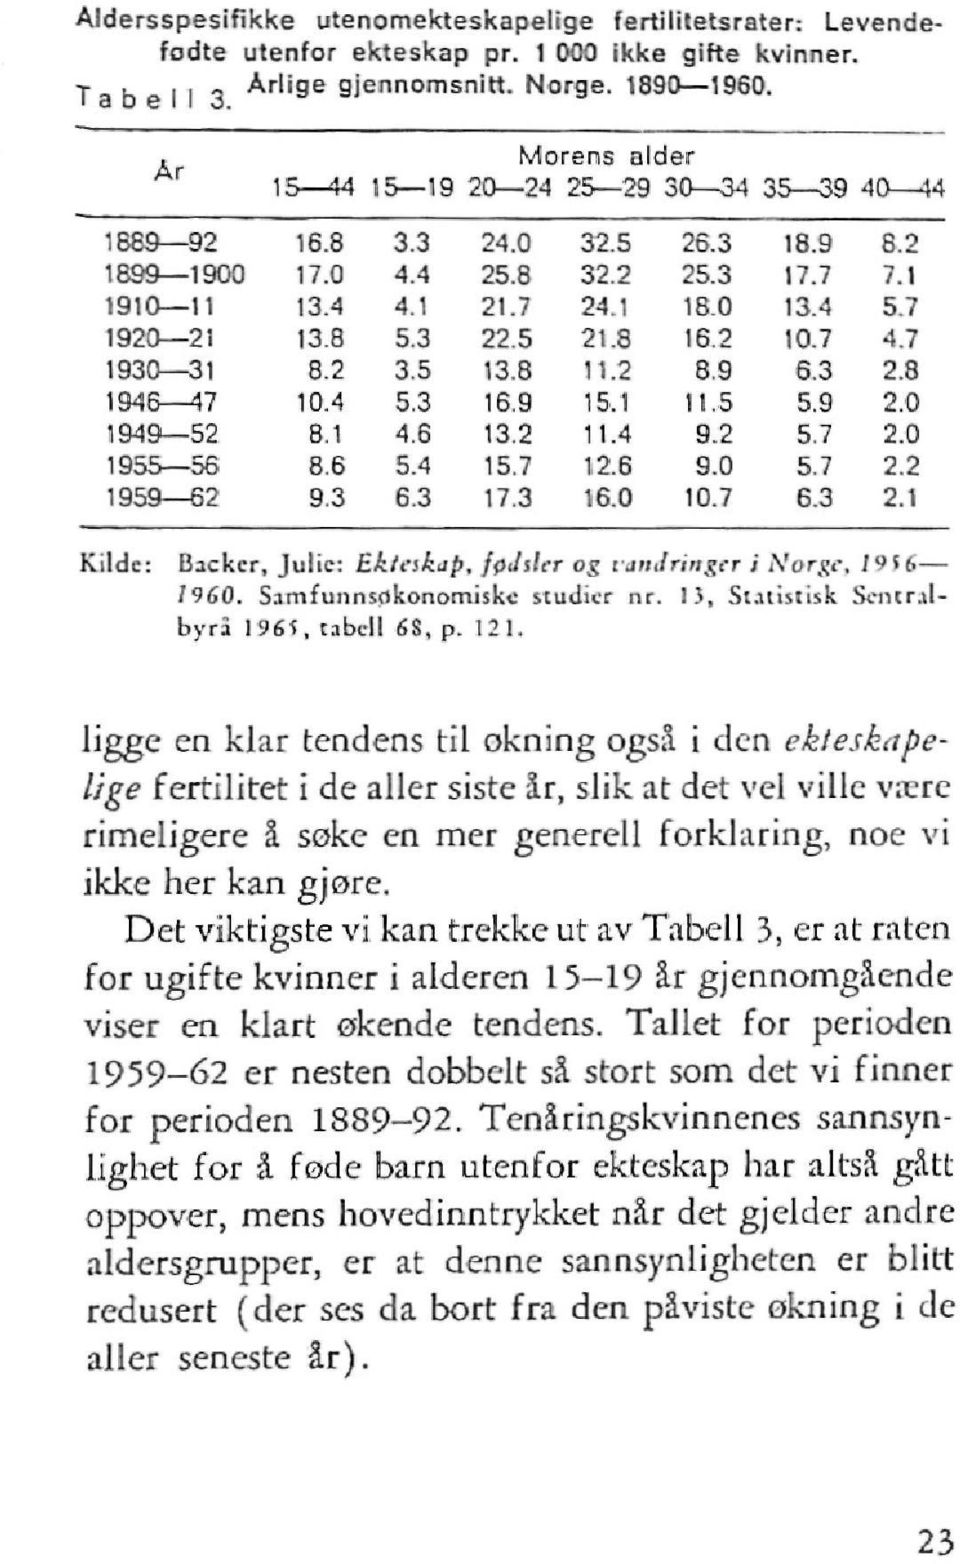 13, Statistisk Sentralbyrå 1965, tabell 8, p. 121.